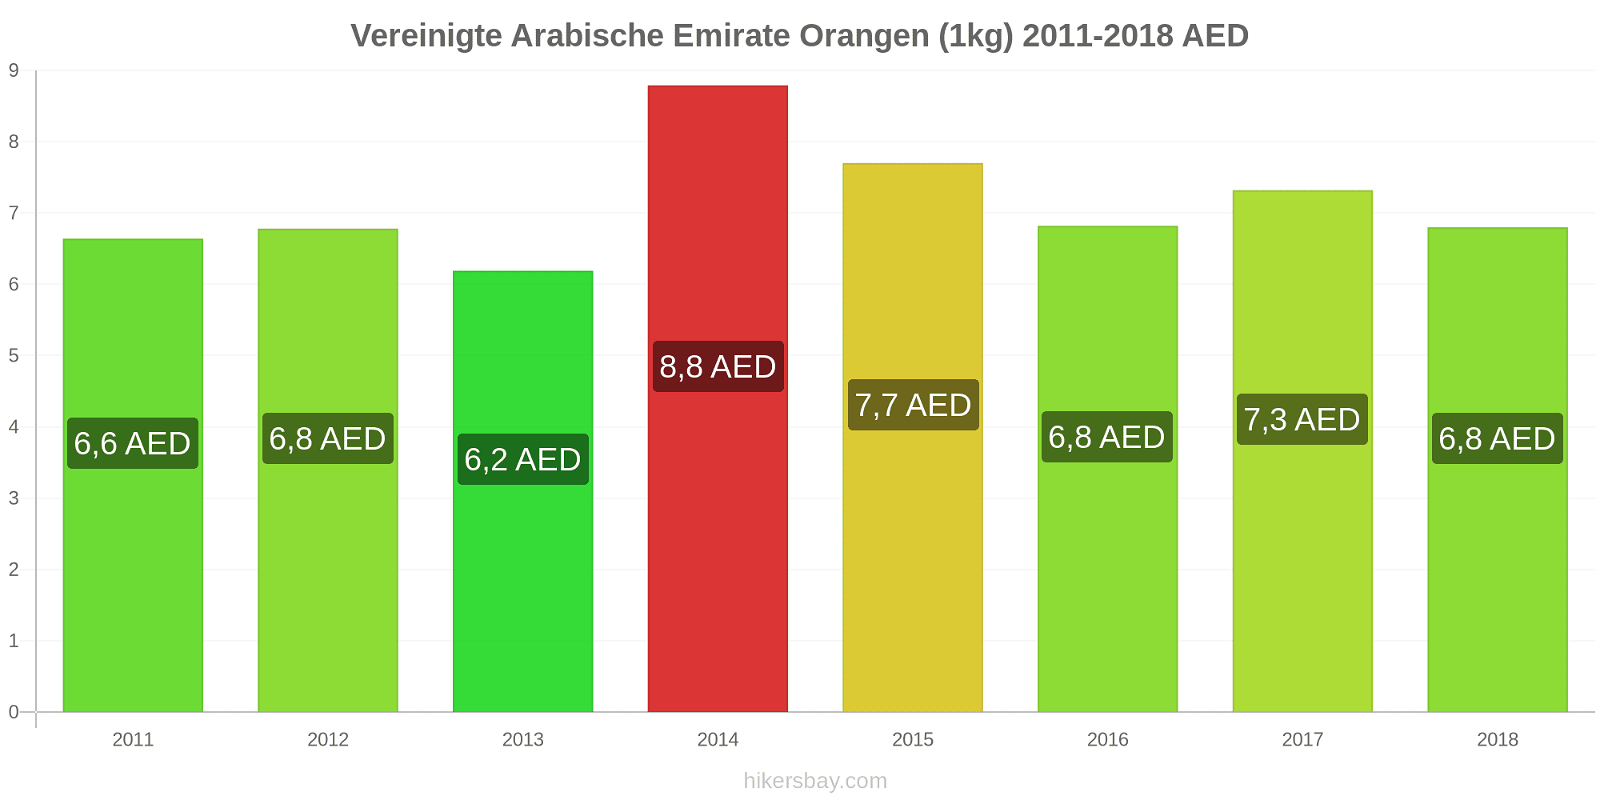 Vereinigte Arabische Emirate Preisänderungen Orangen (1kg) hikersbay.com